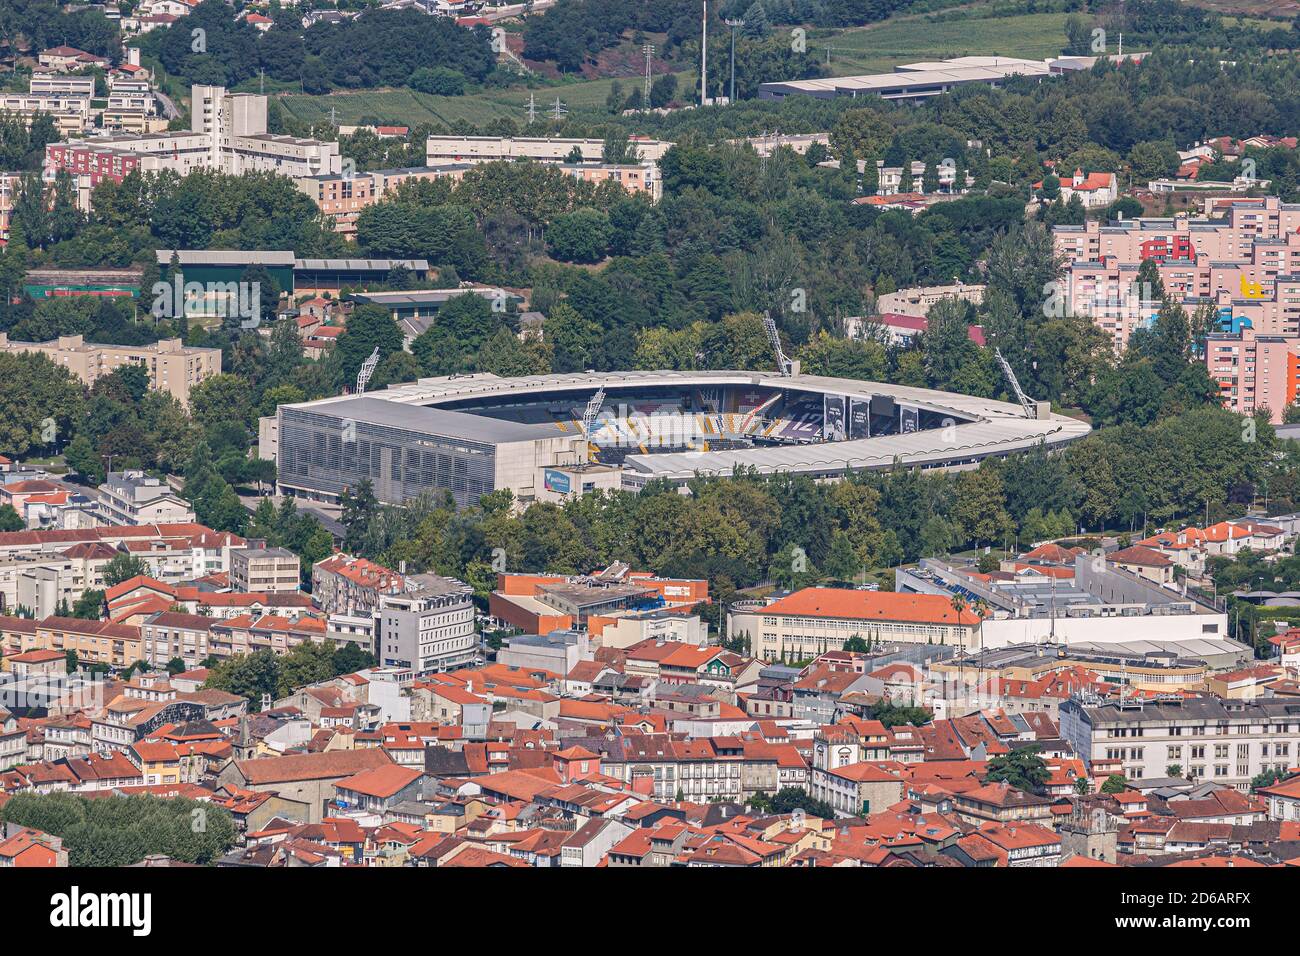 Vista aérea de Guimarães, el lugar de nacimiento de Portugal Foto de stock